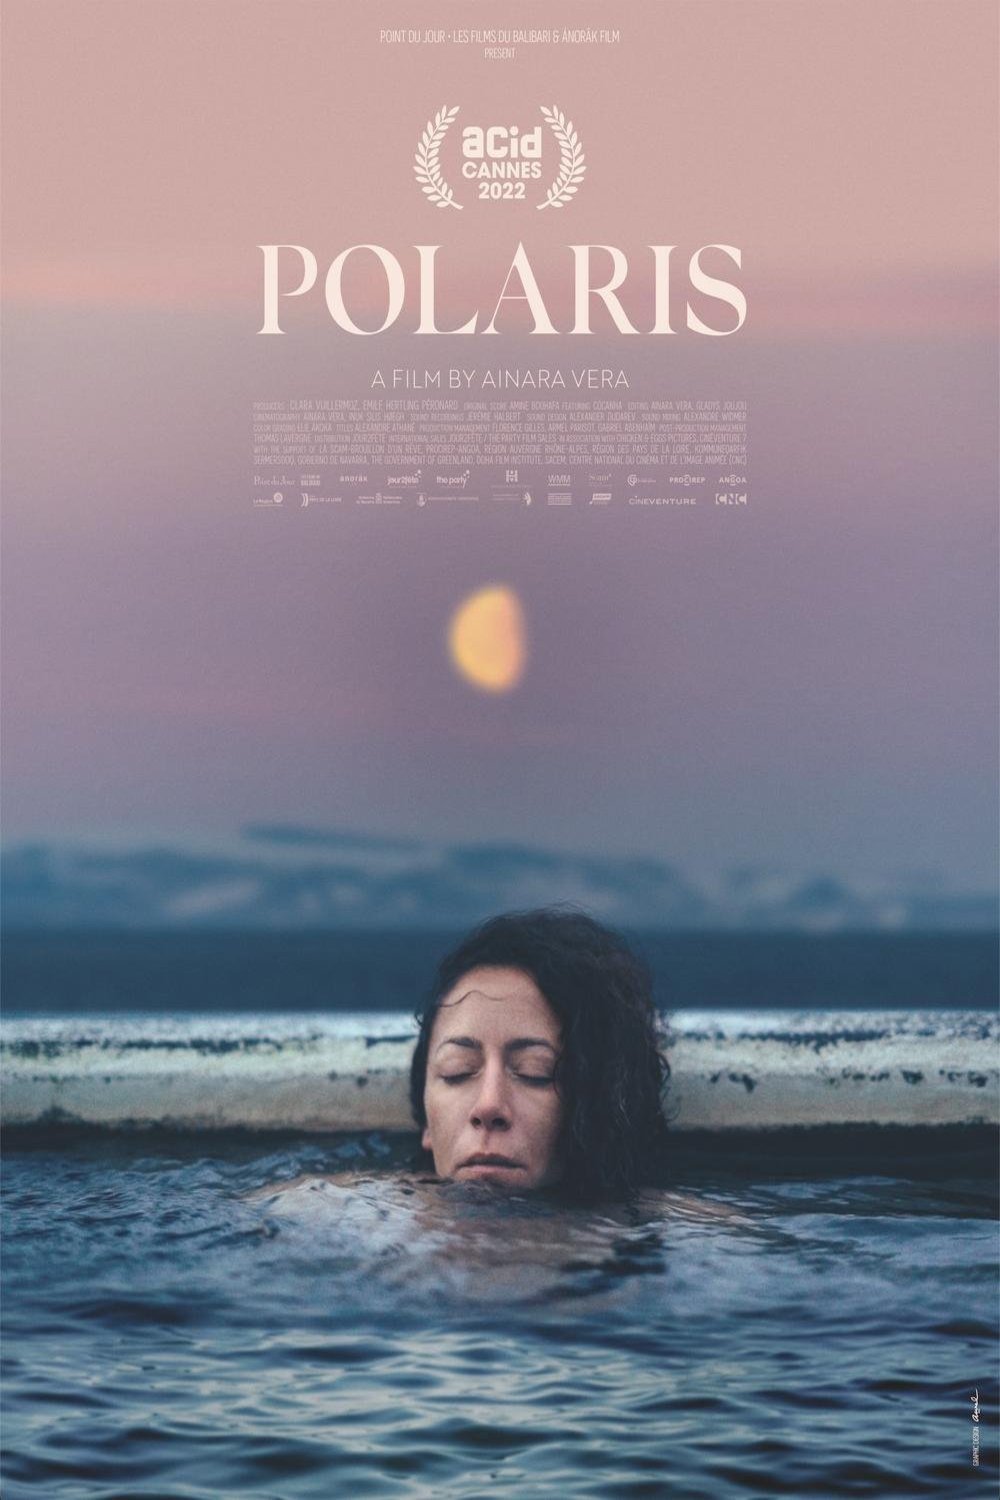 Poster of the movie Polaris